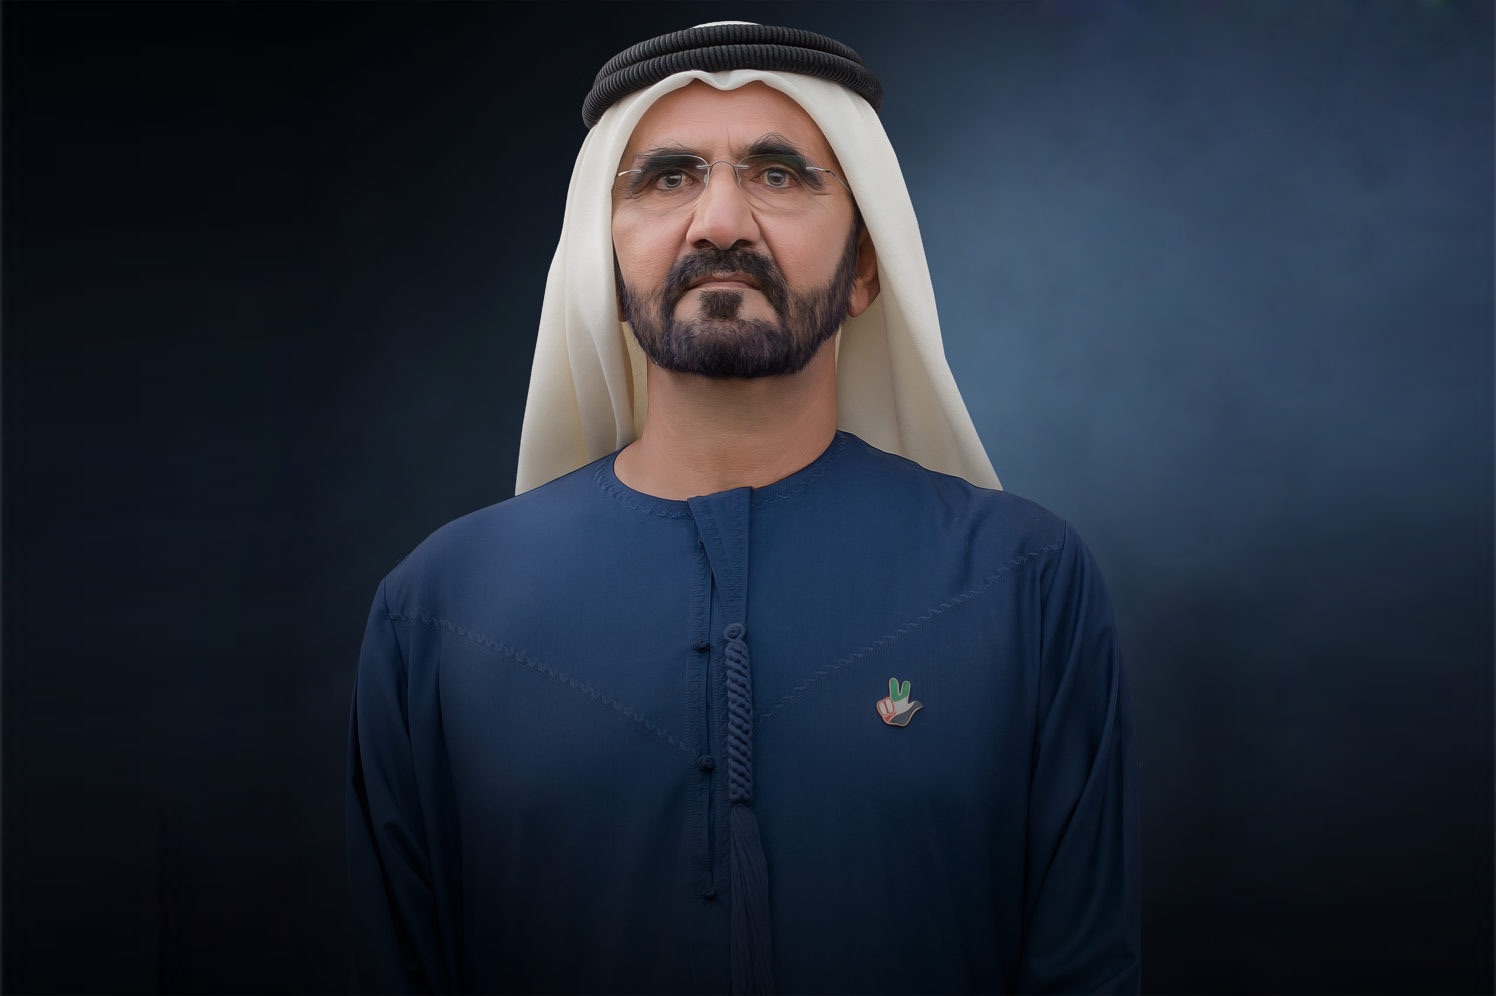 الإعلان عن التشكيل الوزاري الجديد للحكومة الاتحادية بدولة الإمارات